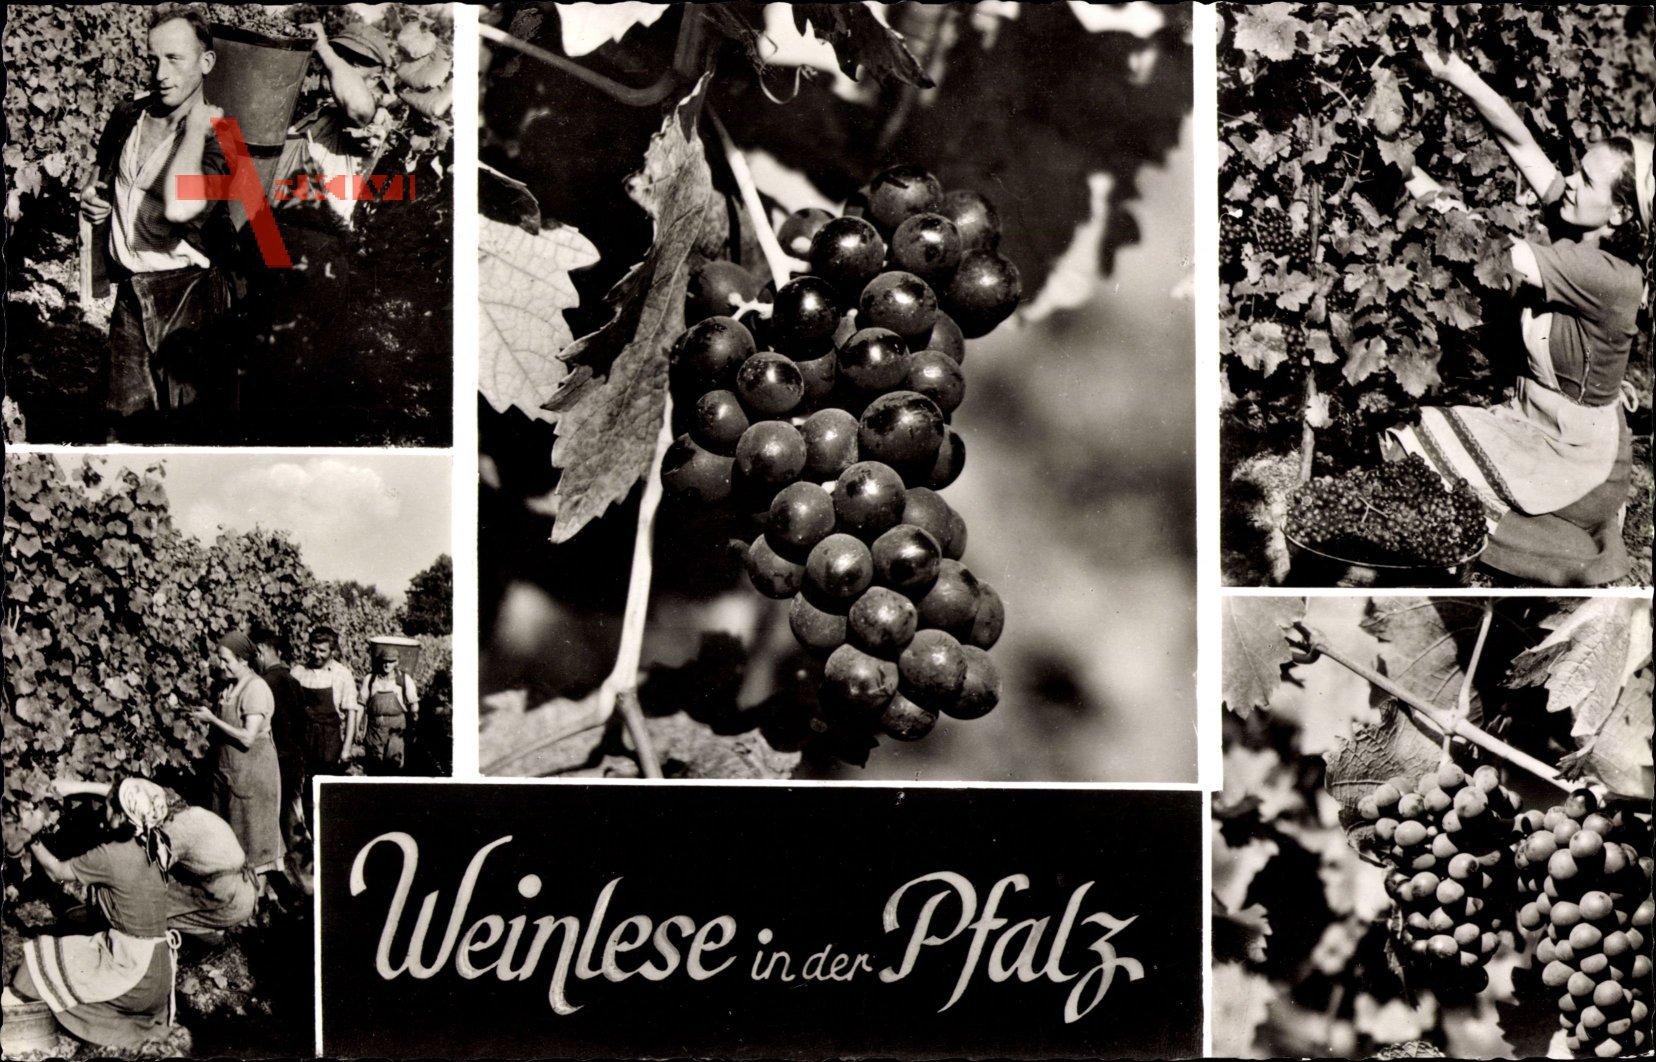 Weinlese in der Pfalz, Weinbau, Weinlese, Reben, Weintrauben